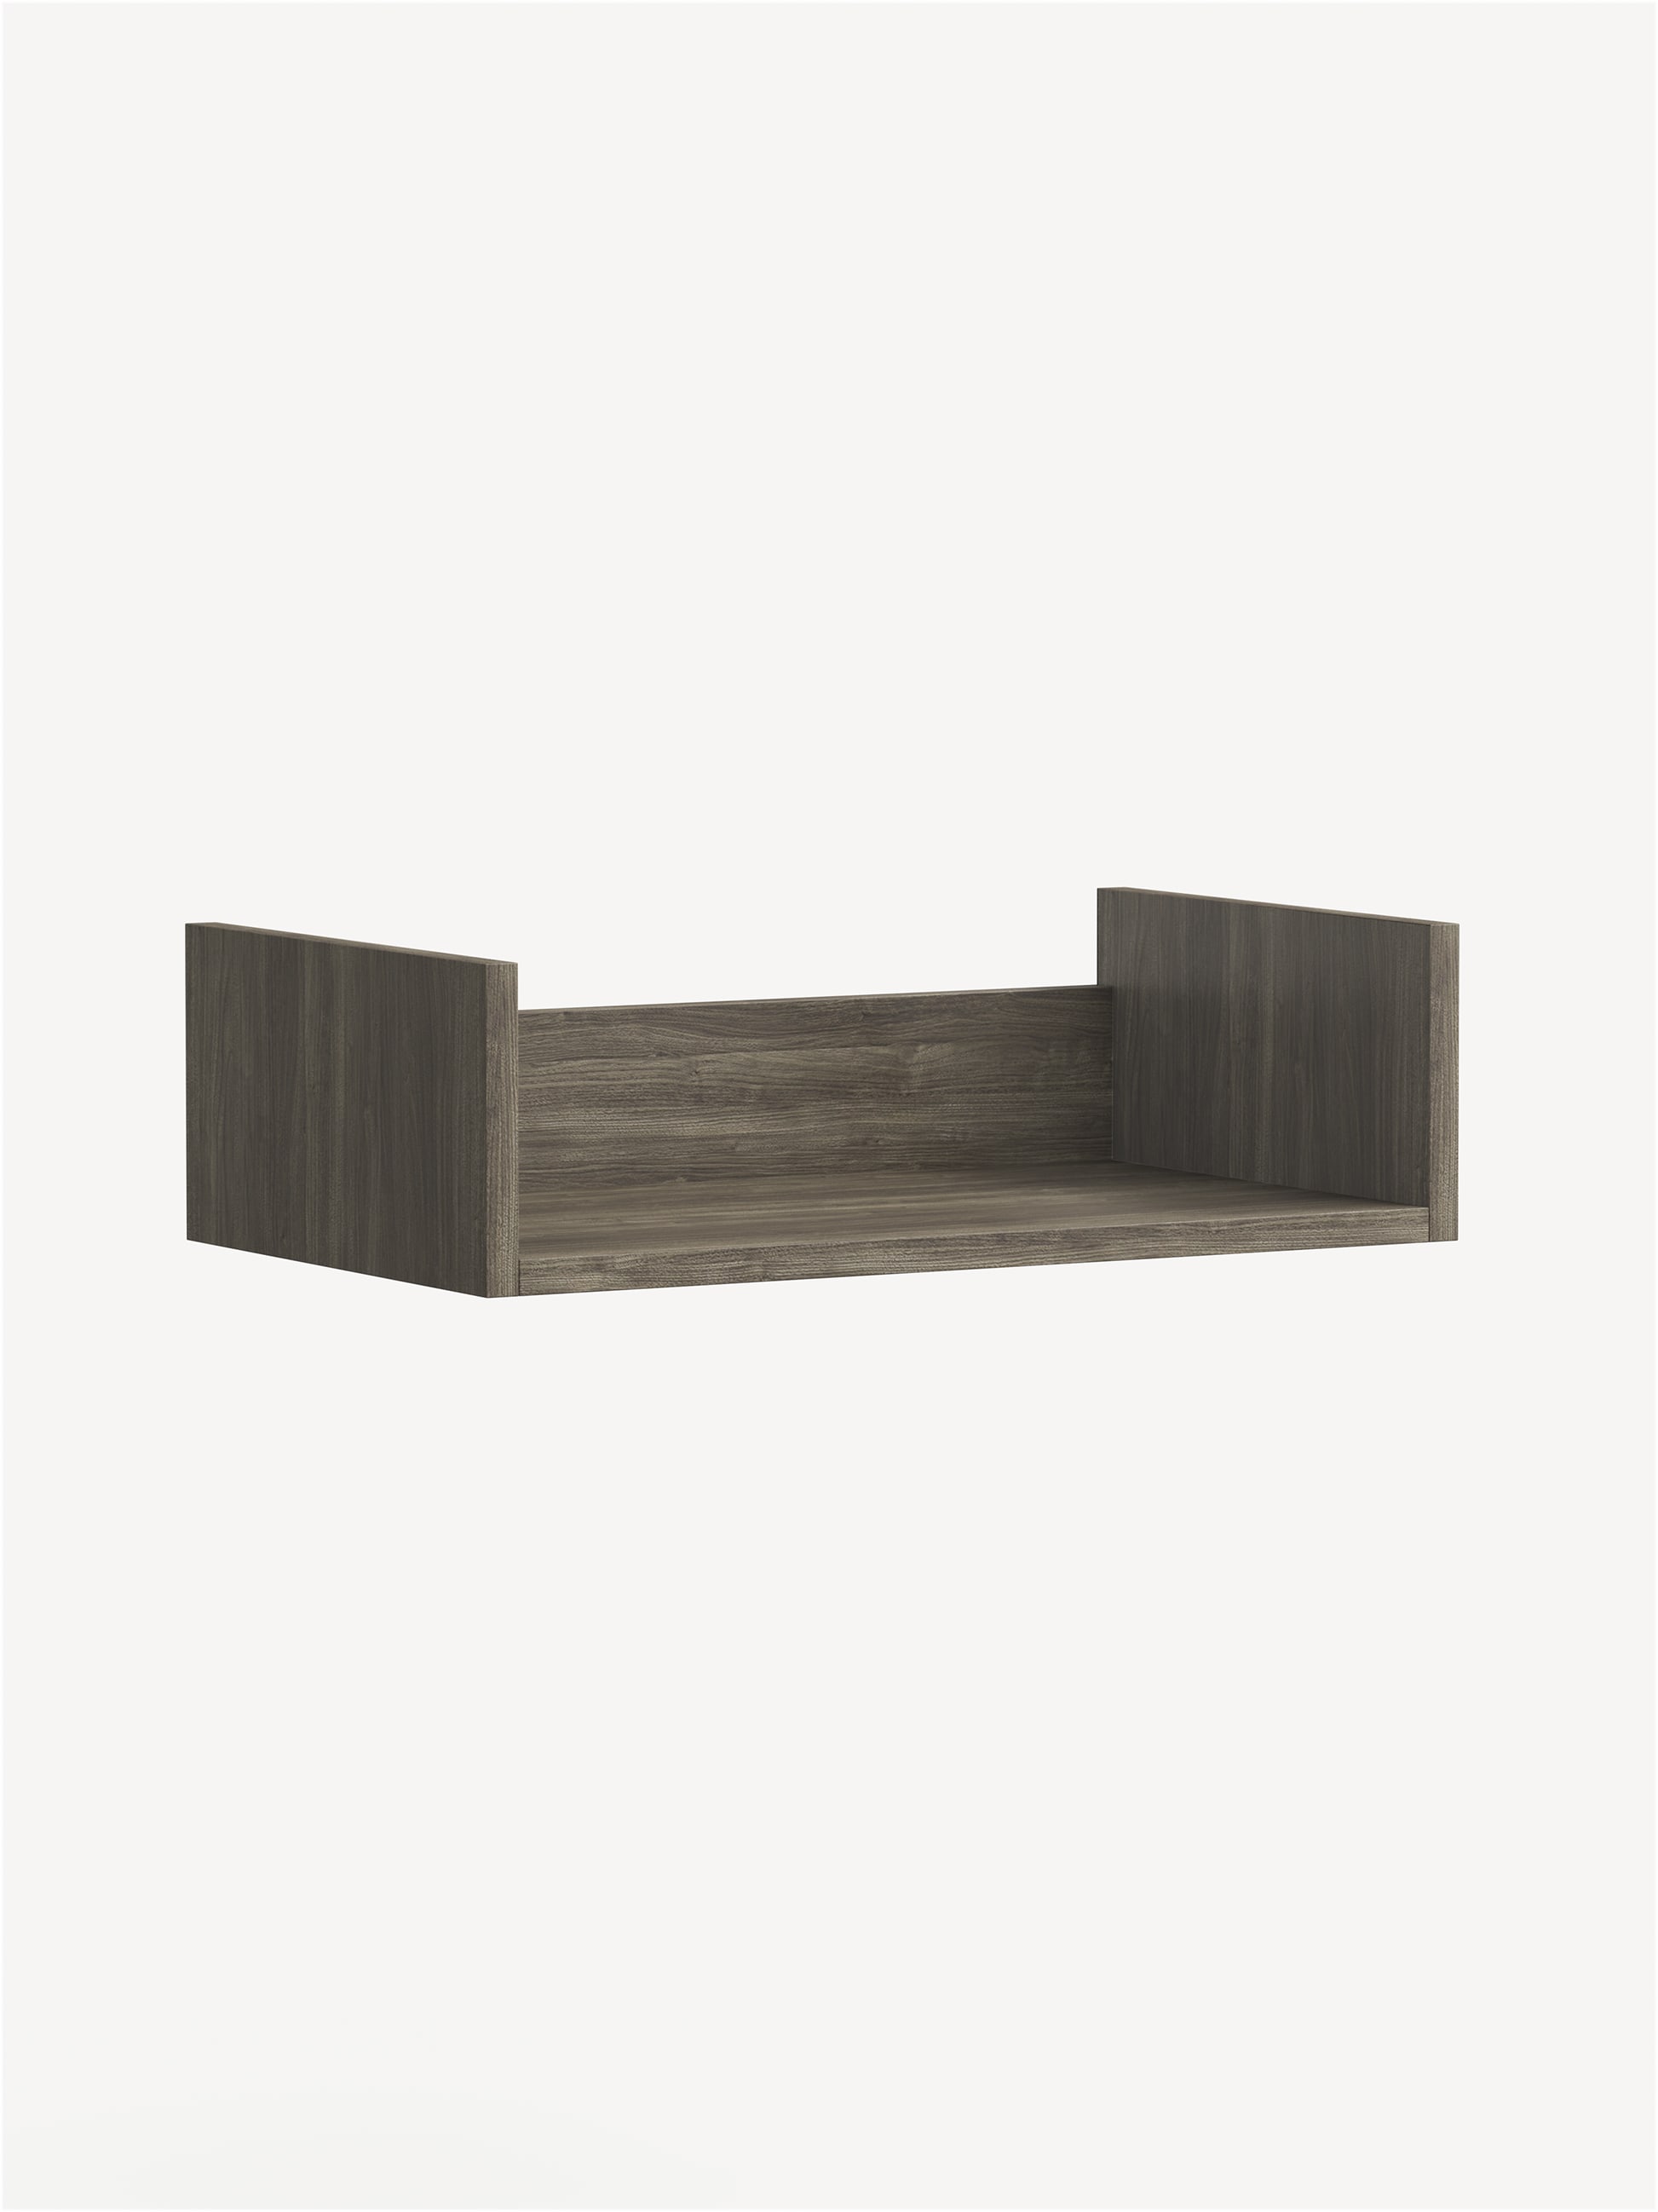 Approach Cubby Storage Shelf in brownish grey wood.